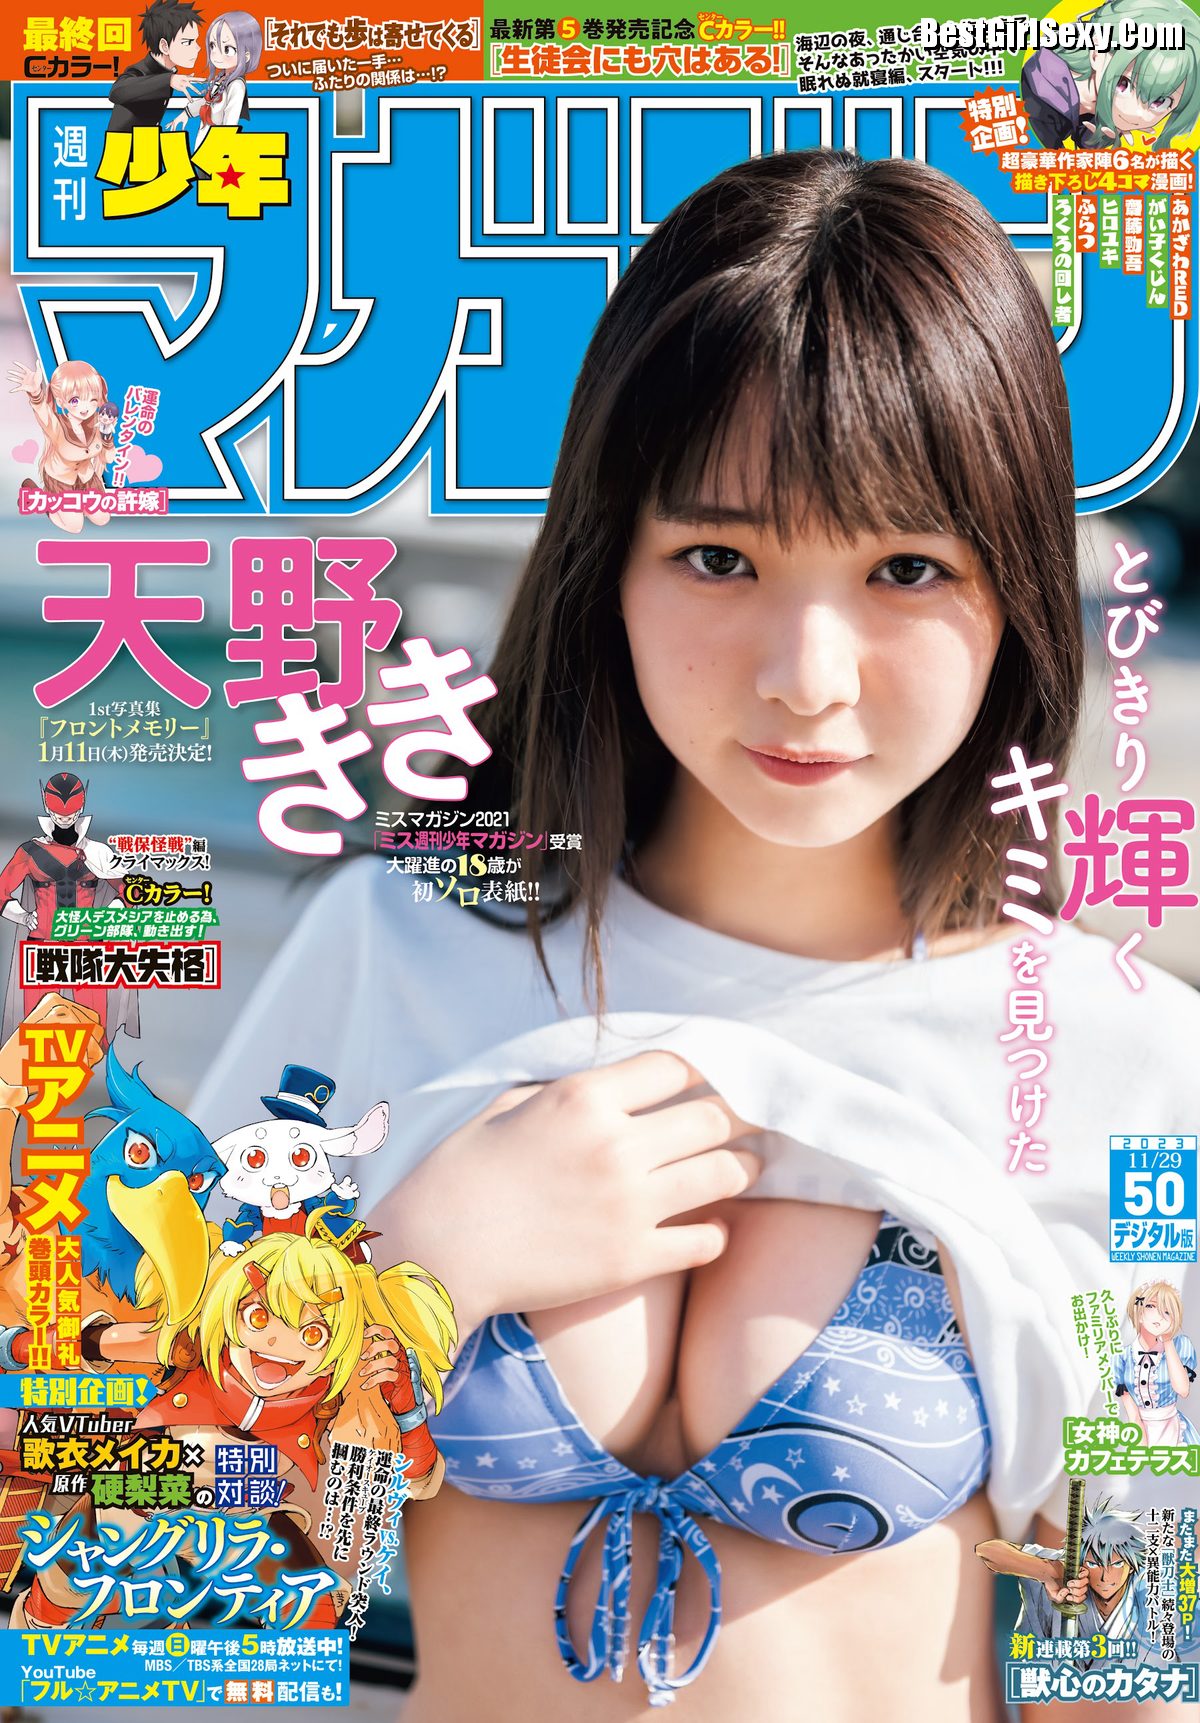 Shonen Magazine 2023 No 50 Kiki Amano 天野きき 0001 4993083104.jpg